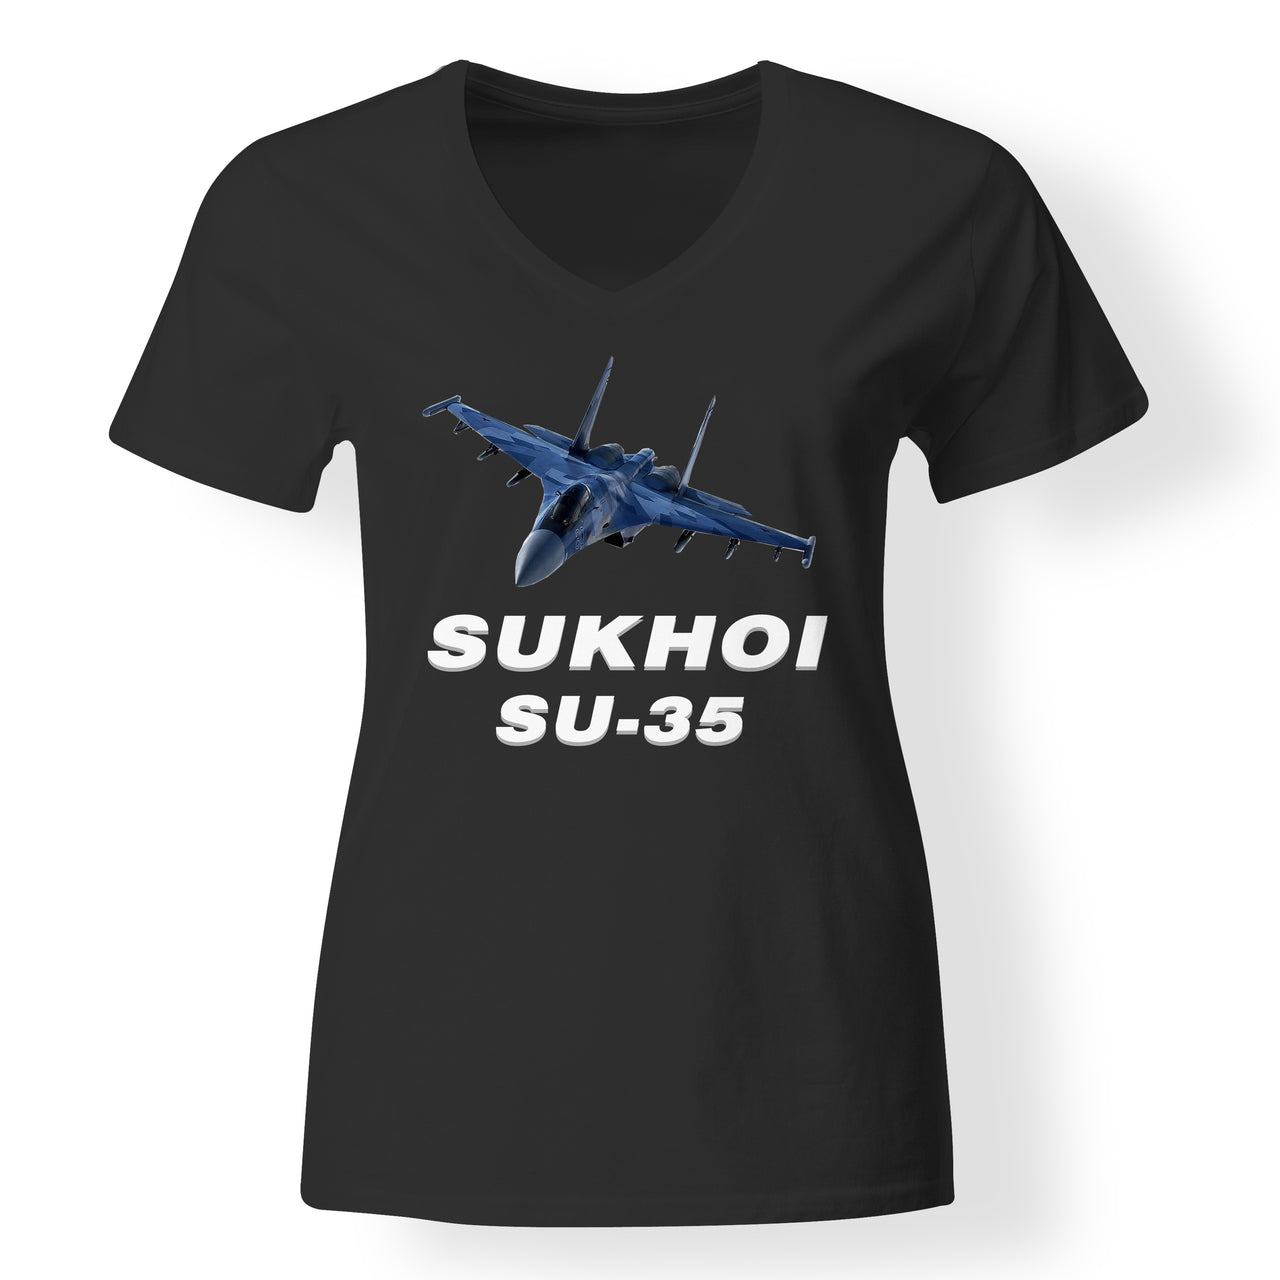 The Sukhoi SU-35 Designed V-Neck T-Shirts